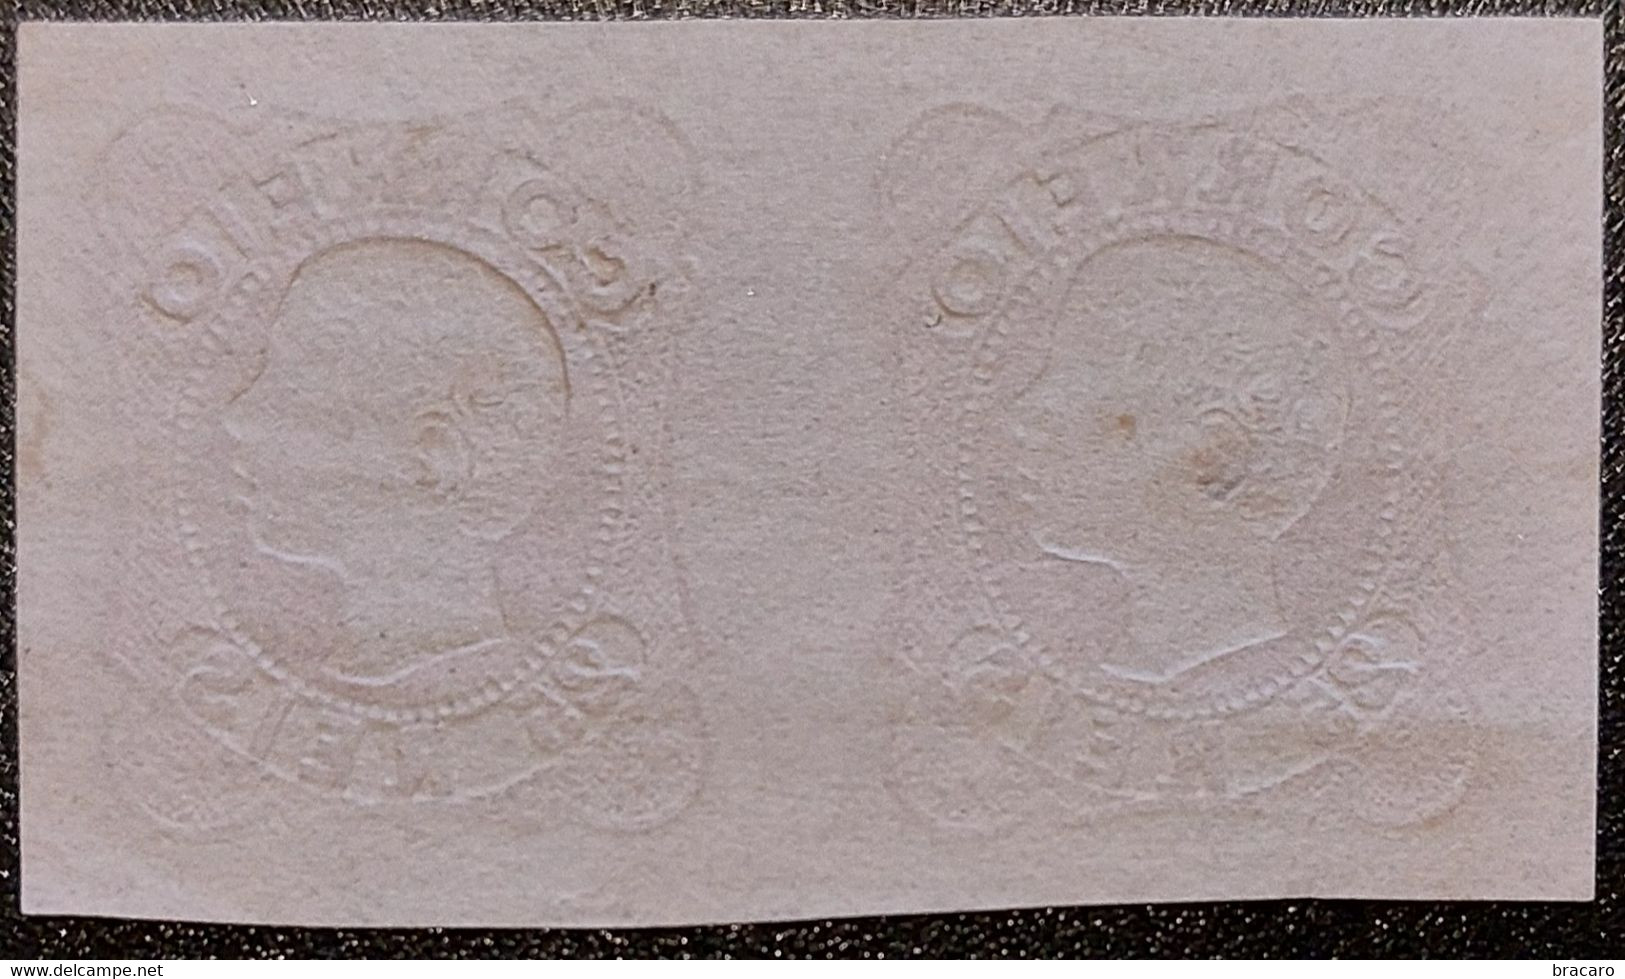 PORTUGAL - D. Pedro V, Cabelos Anelados 25 Reis Mf13 - Par, Exemplares De LUXO - Obliterados à Pena - Used Stamps